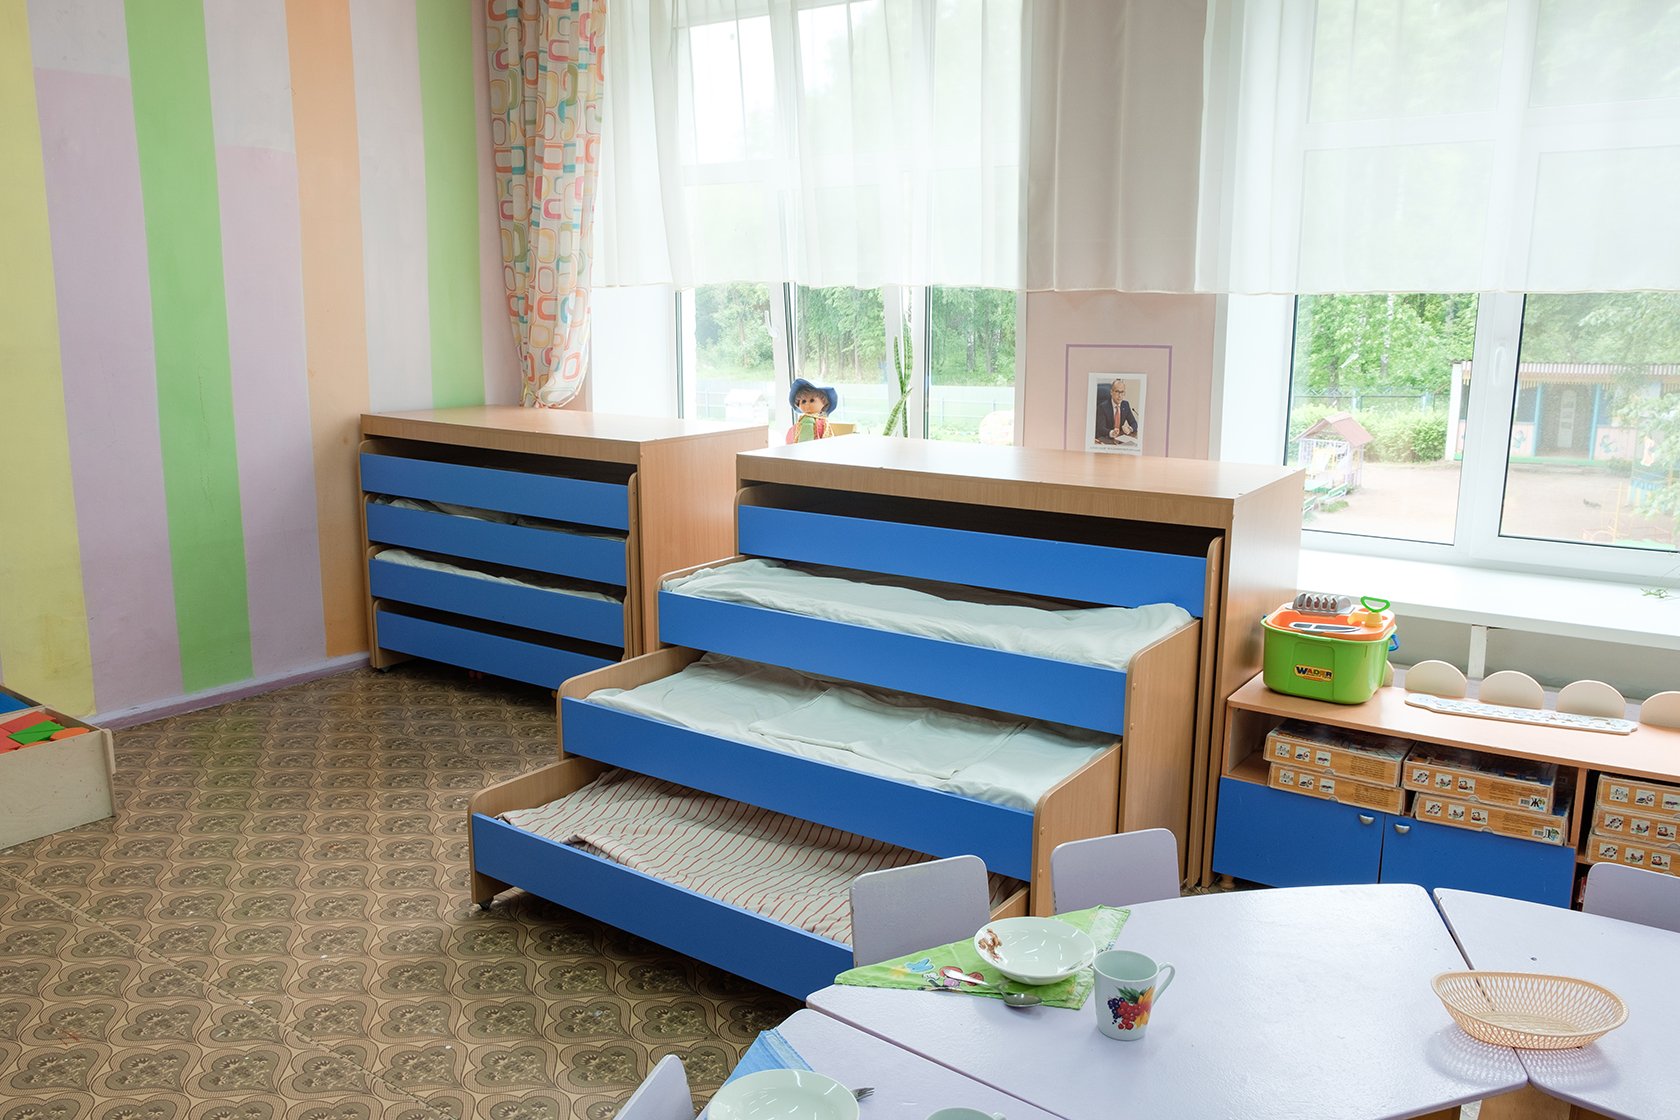 Сайт детской мебели для детских садов. Кровати в детском саду. Мебель для детского сада. Выкатные кровати для детского сада. Мебель для ДОУ.